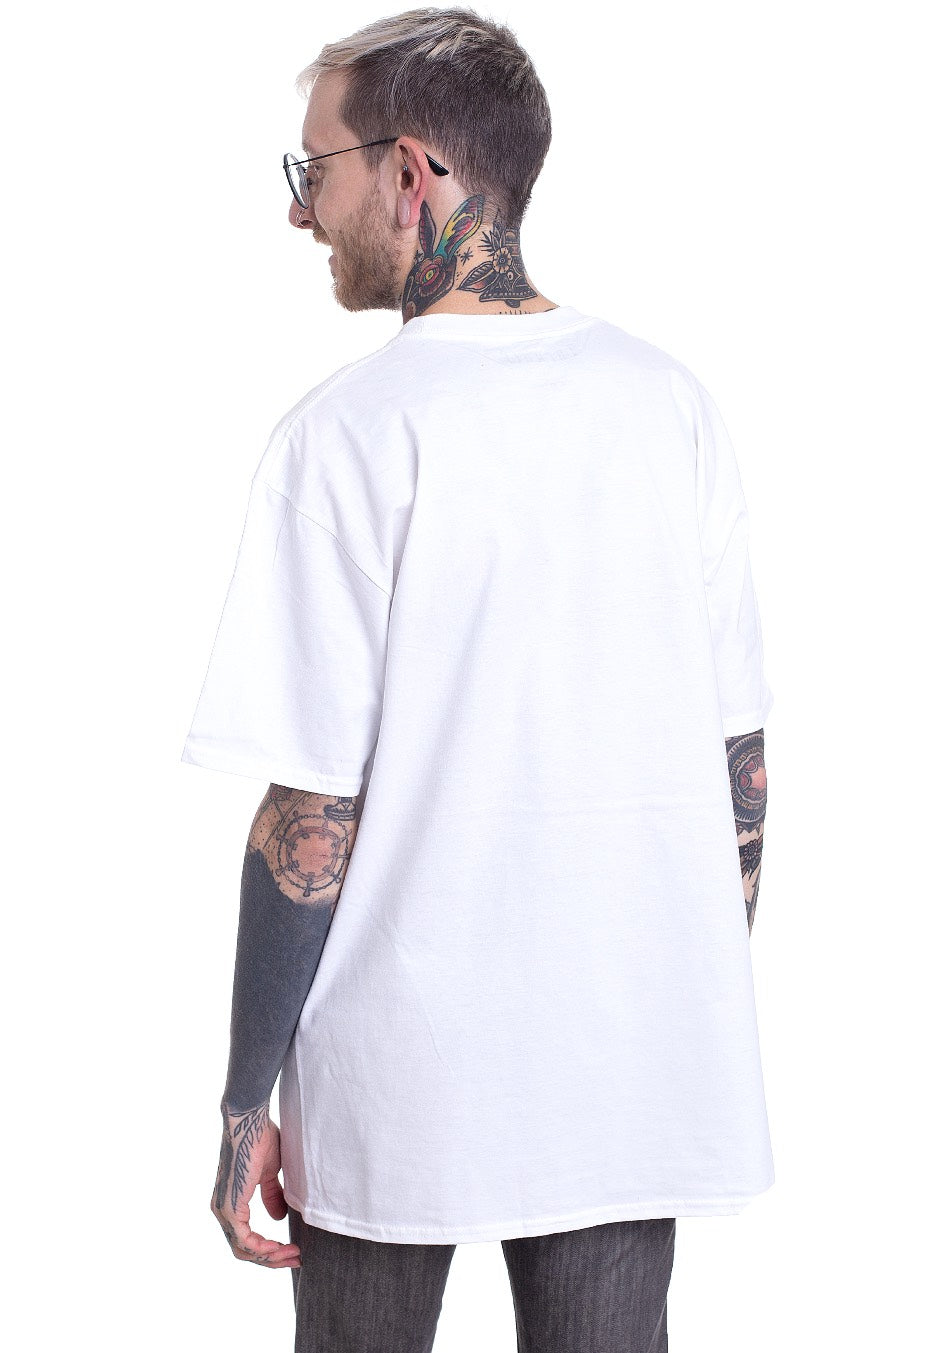 THFKDLF - Love U White - T-Shirt | Men-Image